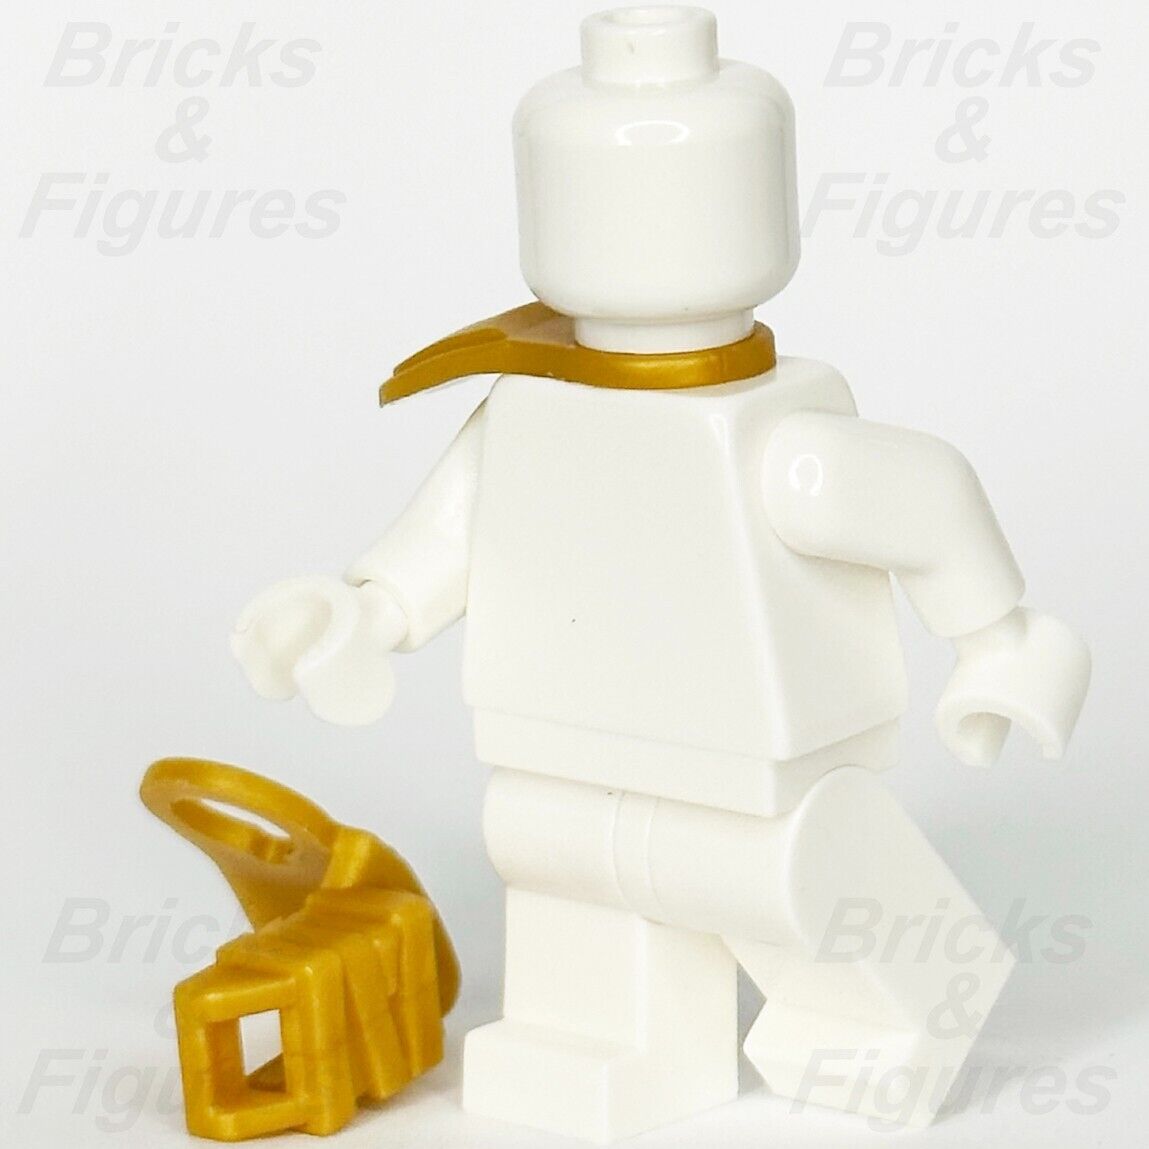 LEGO Ninjago 2 x Pearl Gold Ninja Scabbards for Katana Sword Parts 41162 New